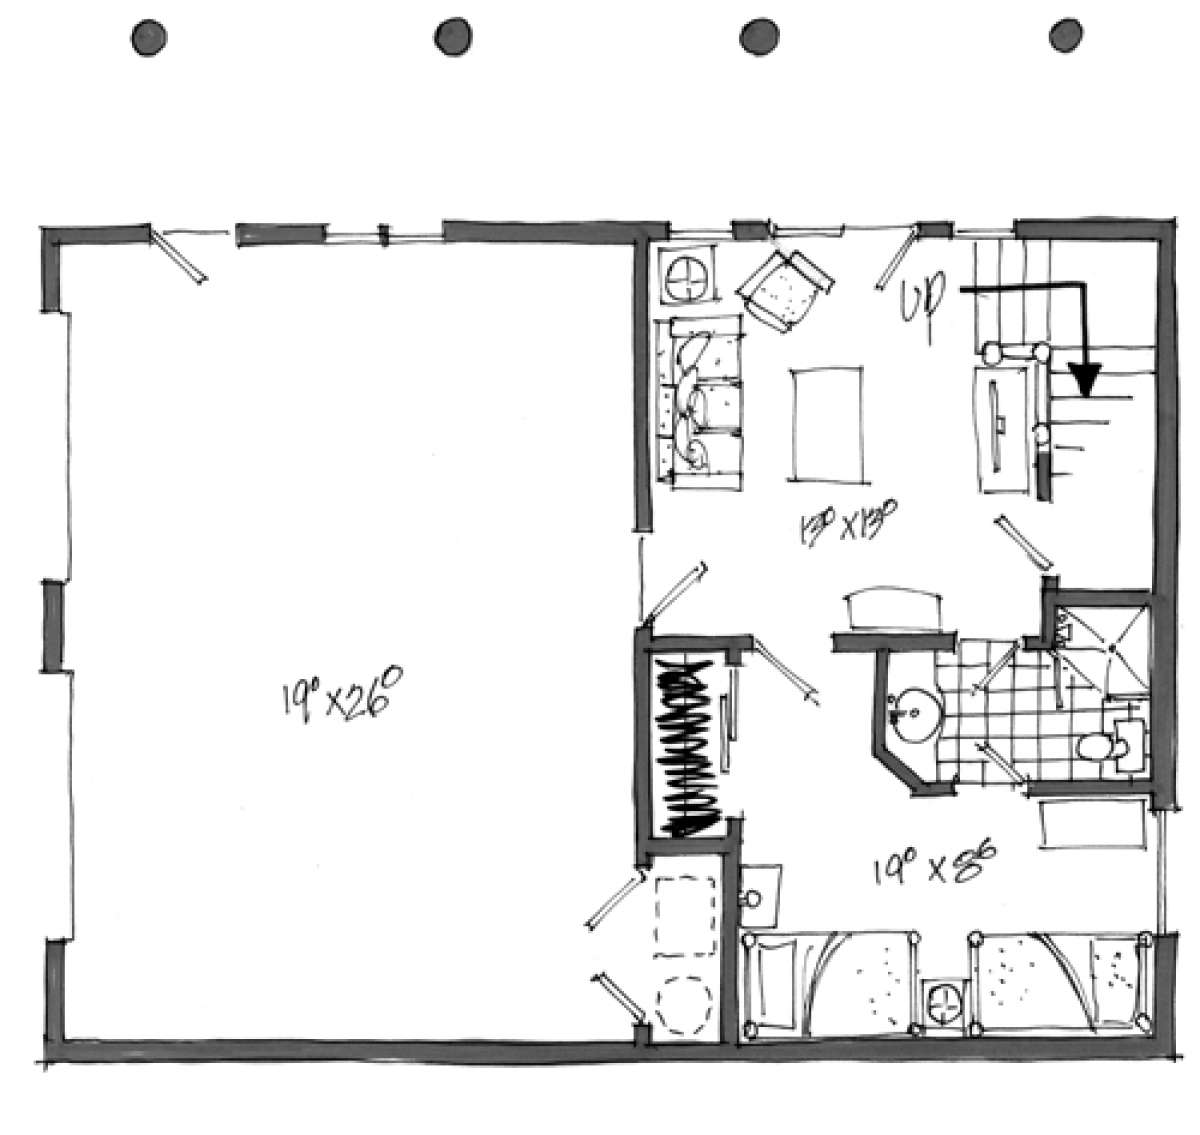 Basement Floor Plan for House Plan #1907-00001